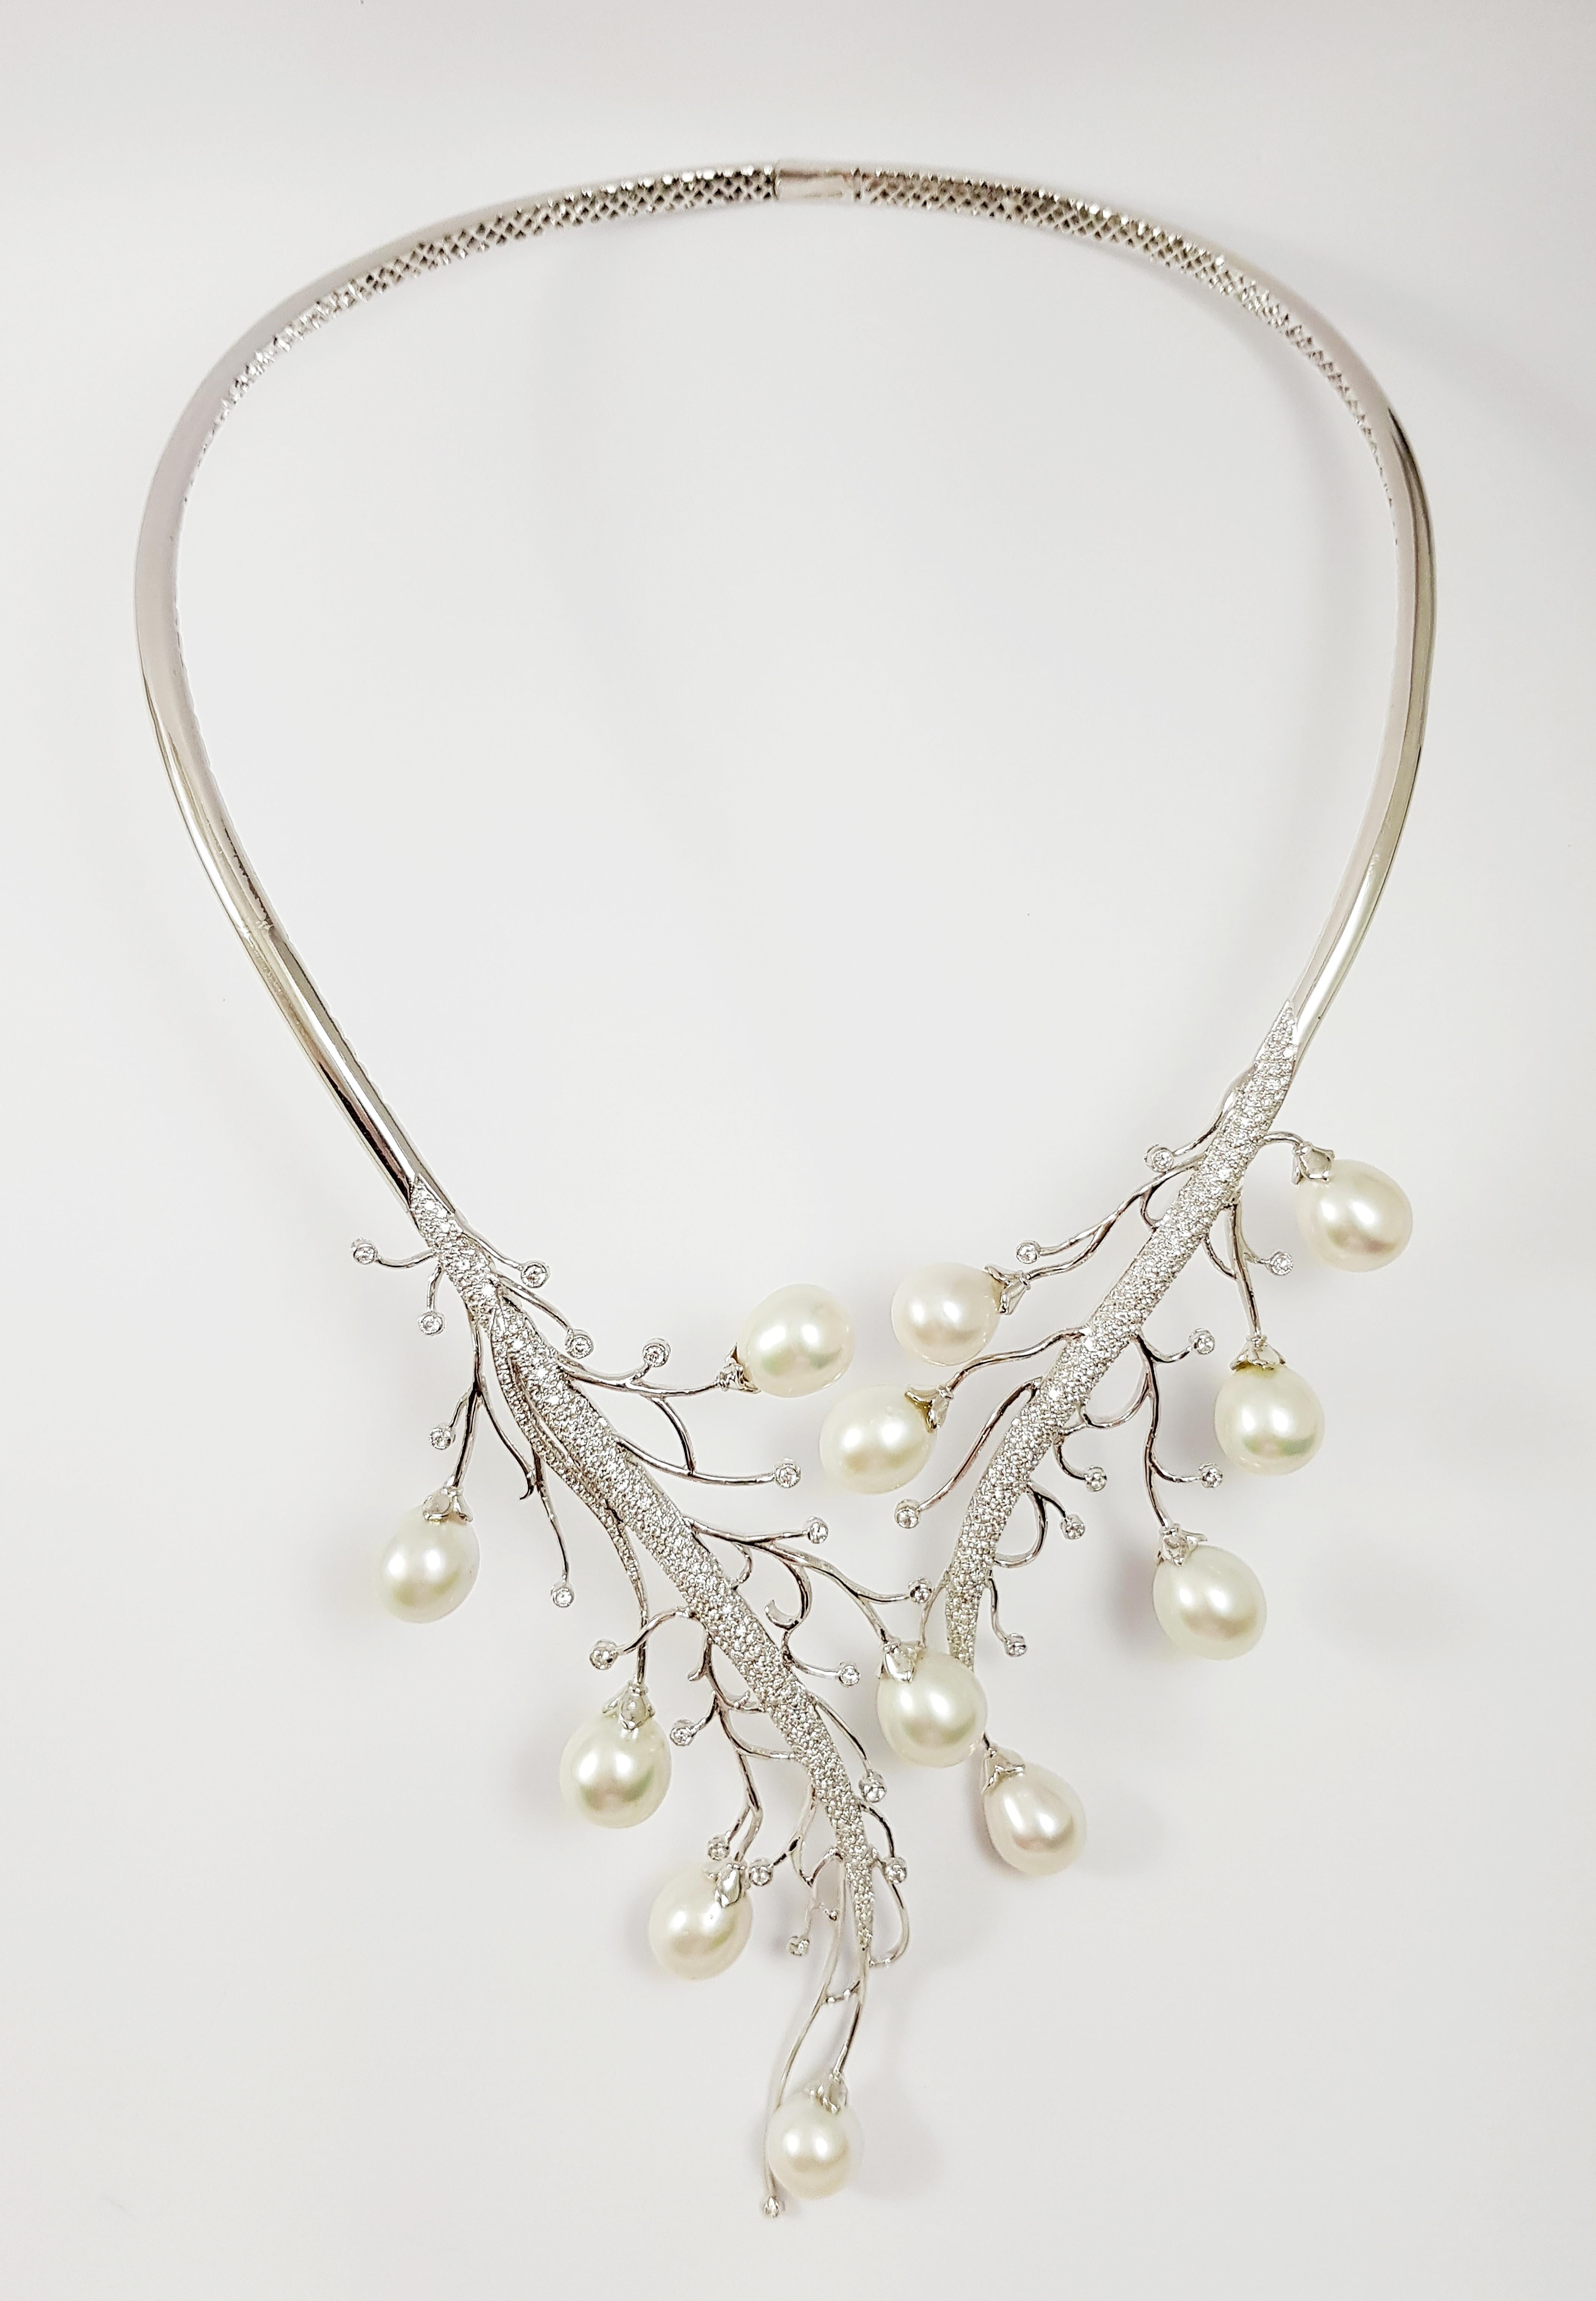 Südseeperle mit Diamant 3,93 Karat Halskette in 18 Karat Weißgold gefasst

Breite:  11.0 cm 
Länge: 45,6 cm
Gesamtgewicht: 91,17 Gramm

